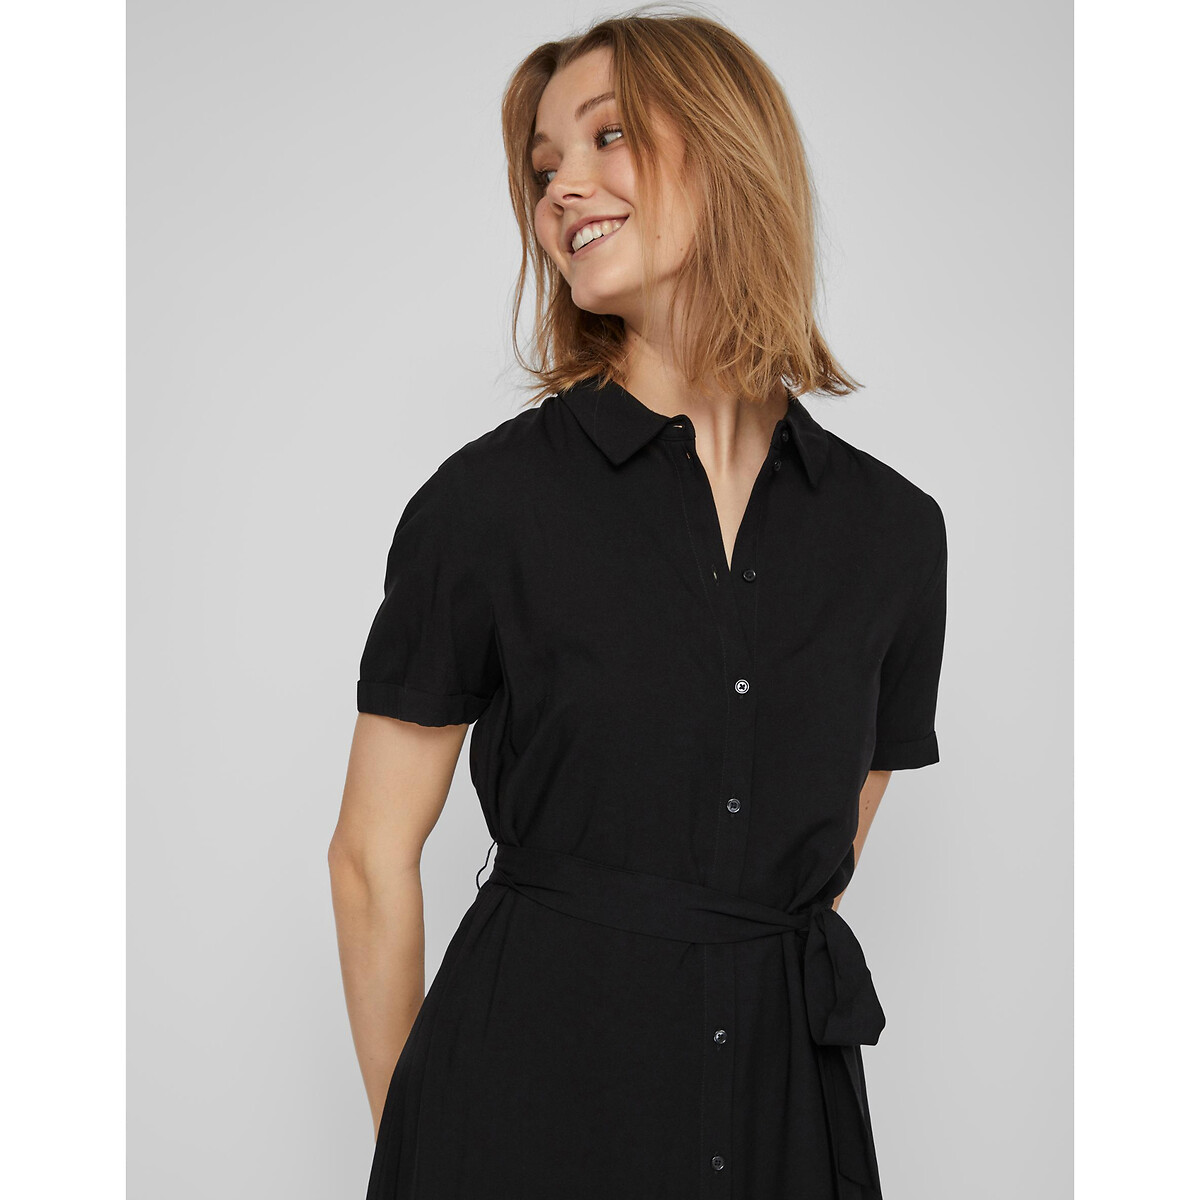 Платье-рубашка Короткие рукава с завязками 46 черный LaRedoute, размер 46 - фото 2